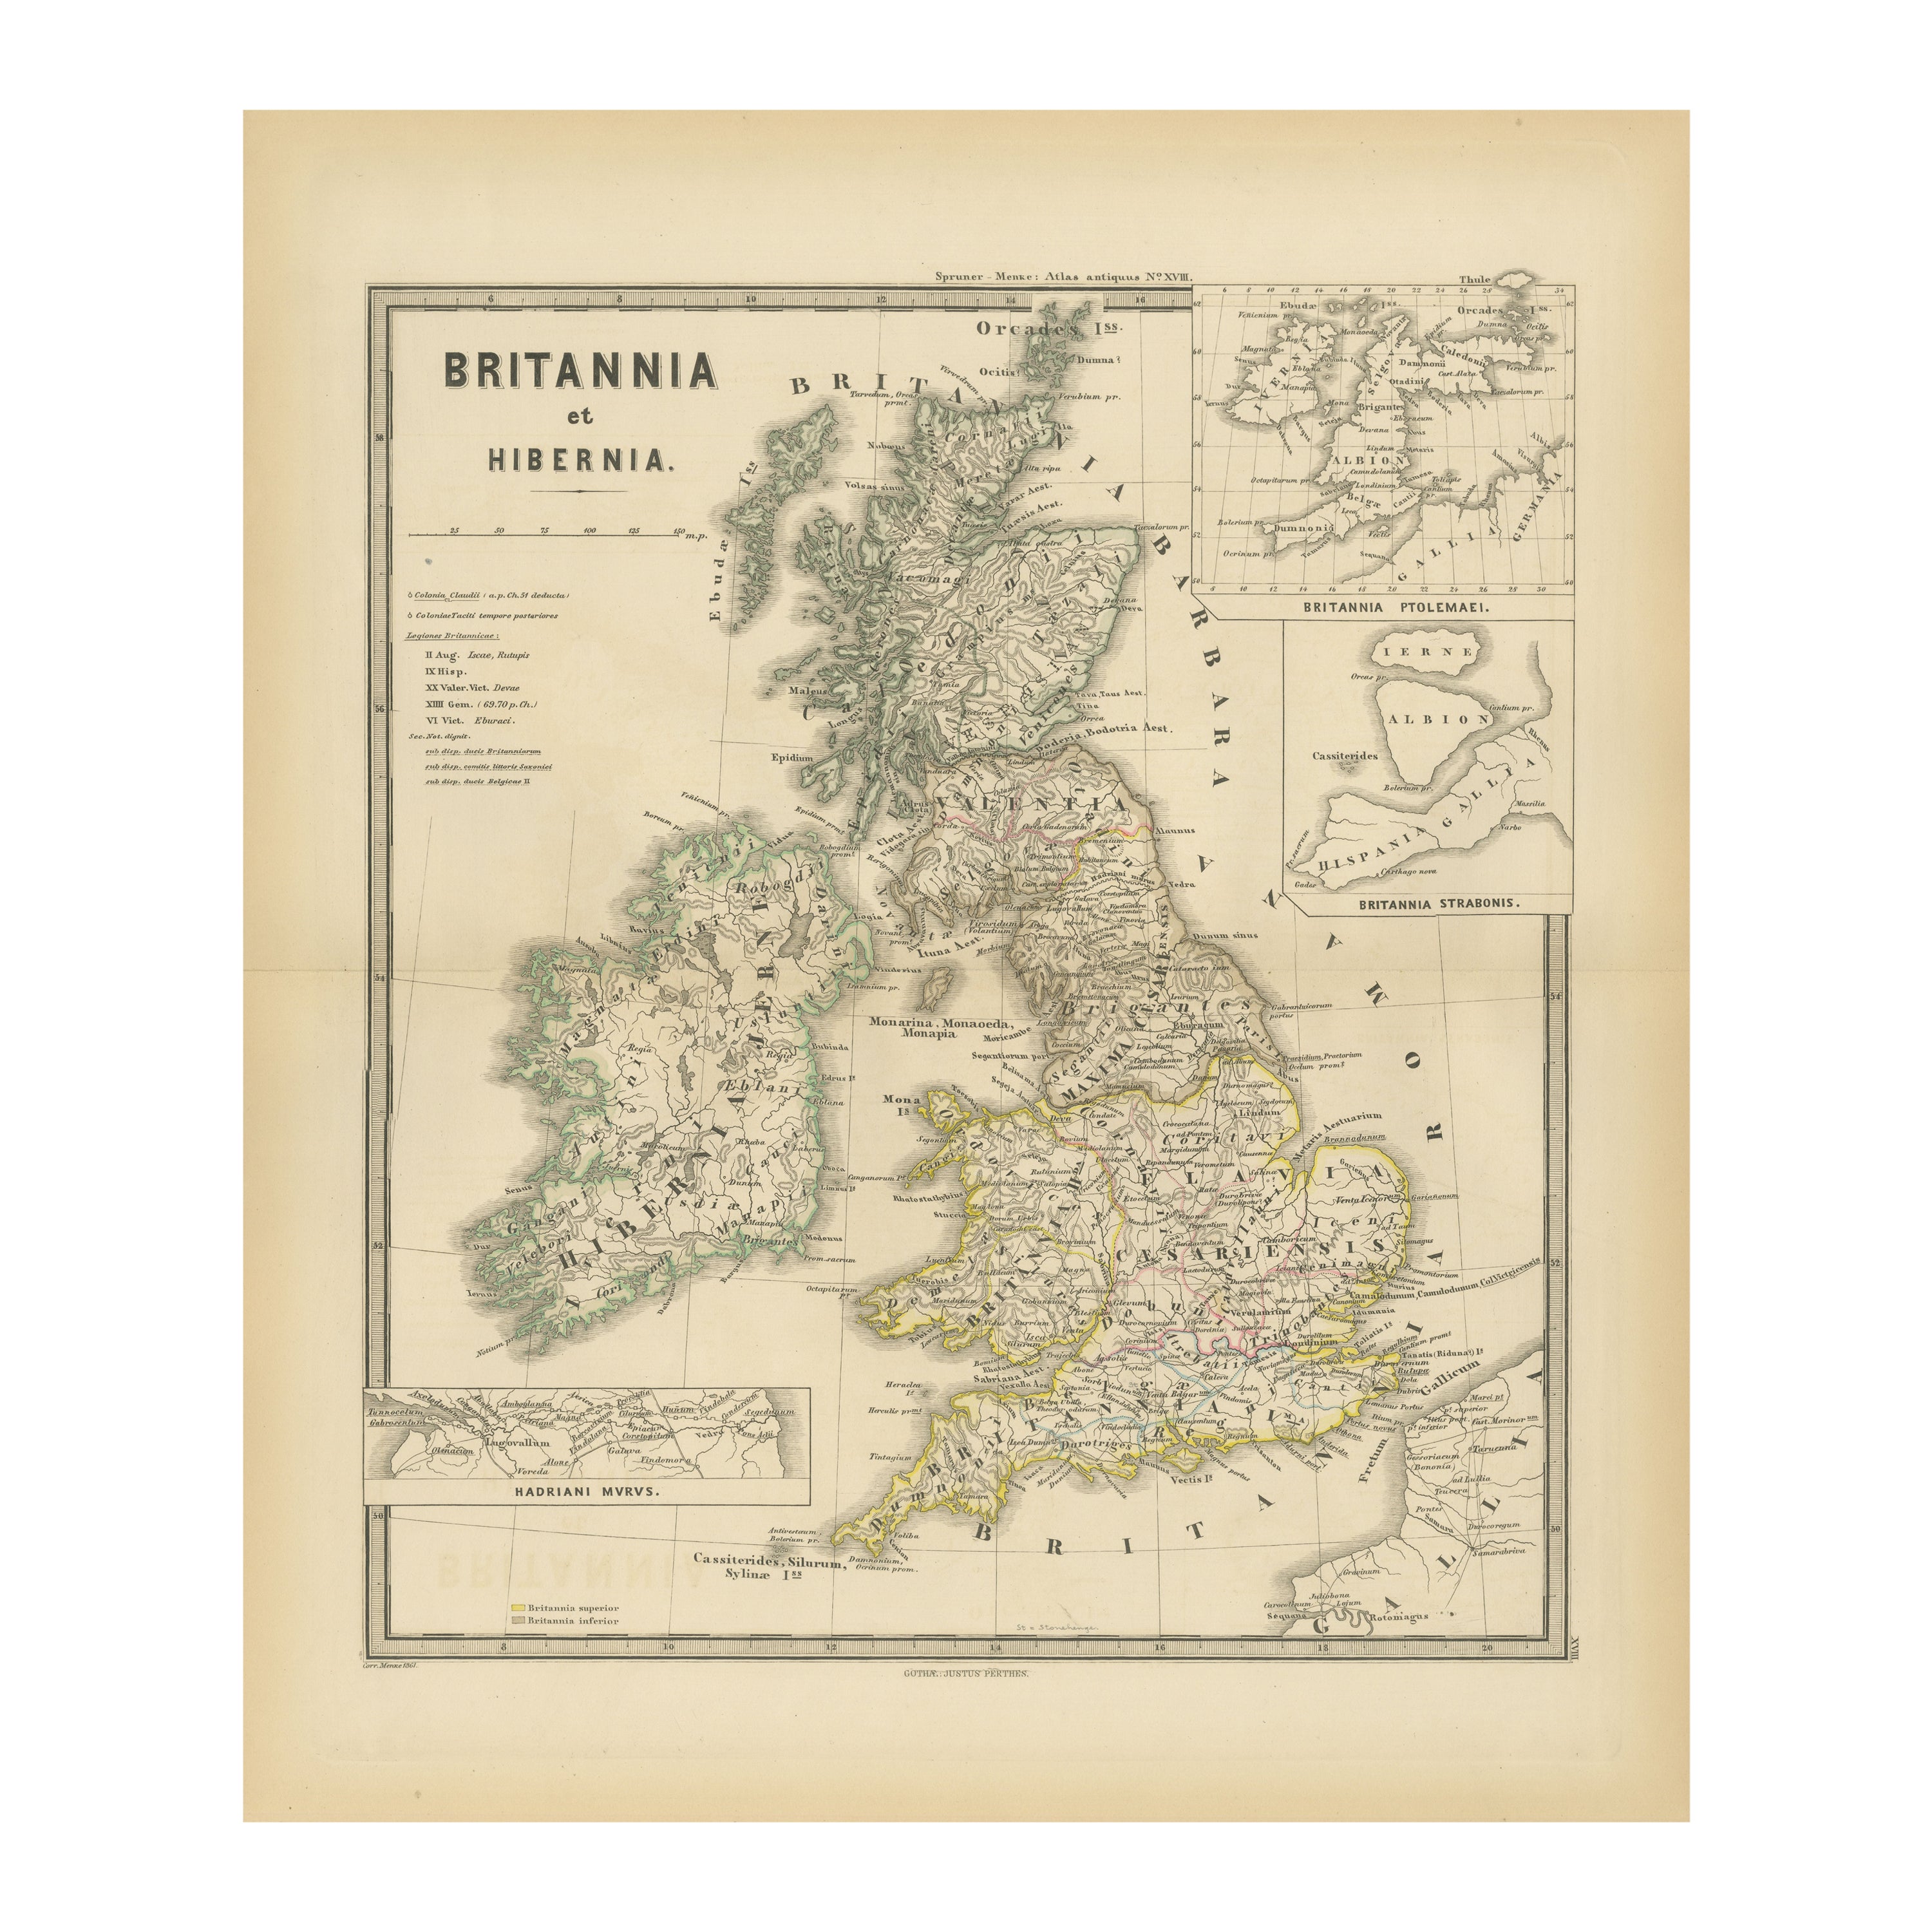 Ancienne cartographie de Britannia et de Hibernia, publiée en 1880